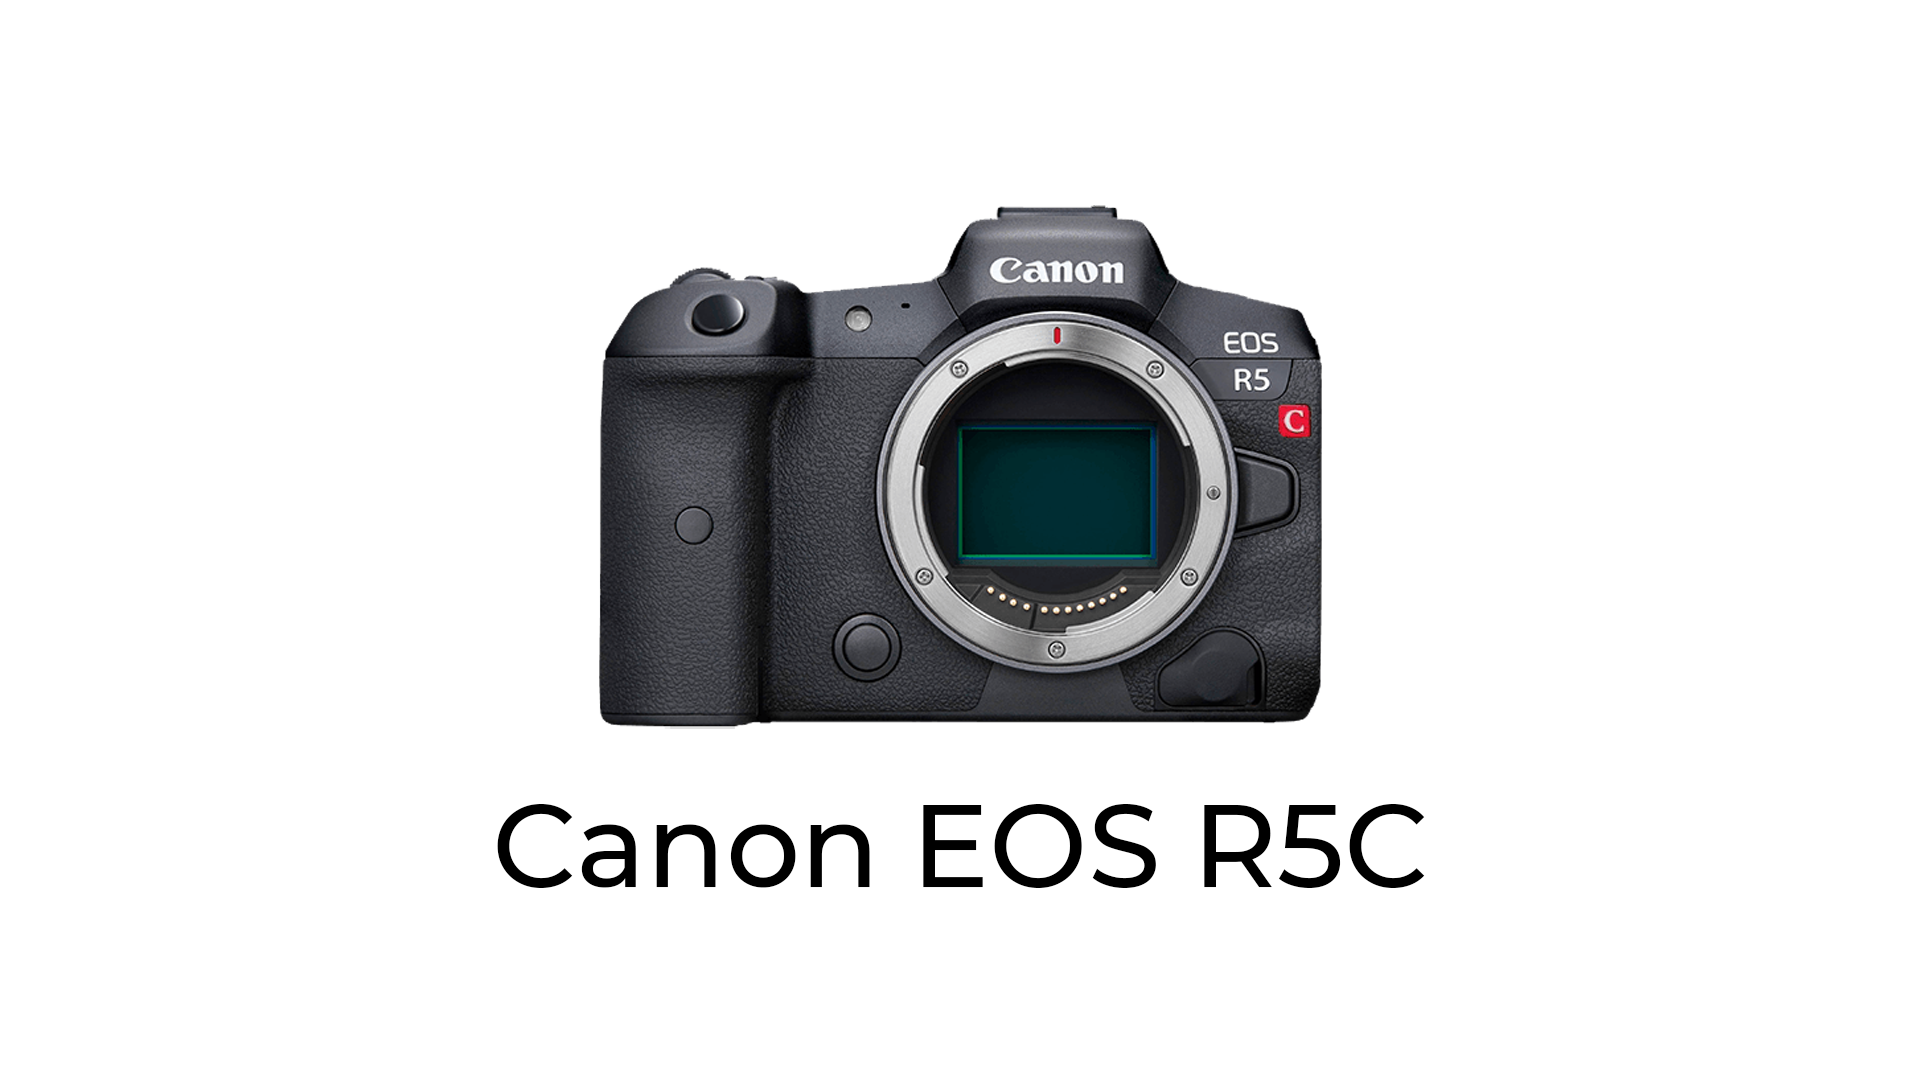 Powitajcie Canon EOS R5C - 8K to dopiero początek jego możliwości